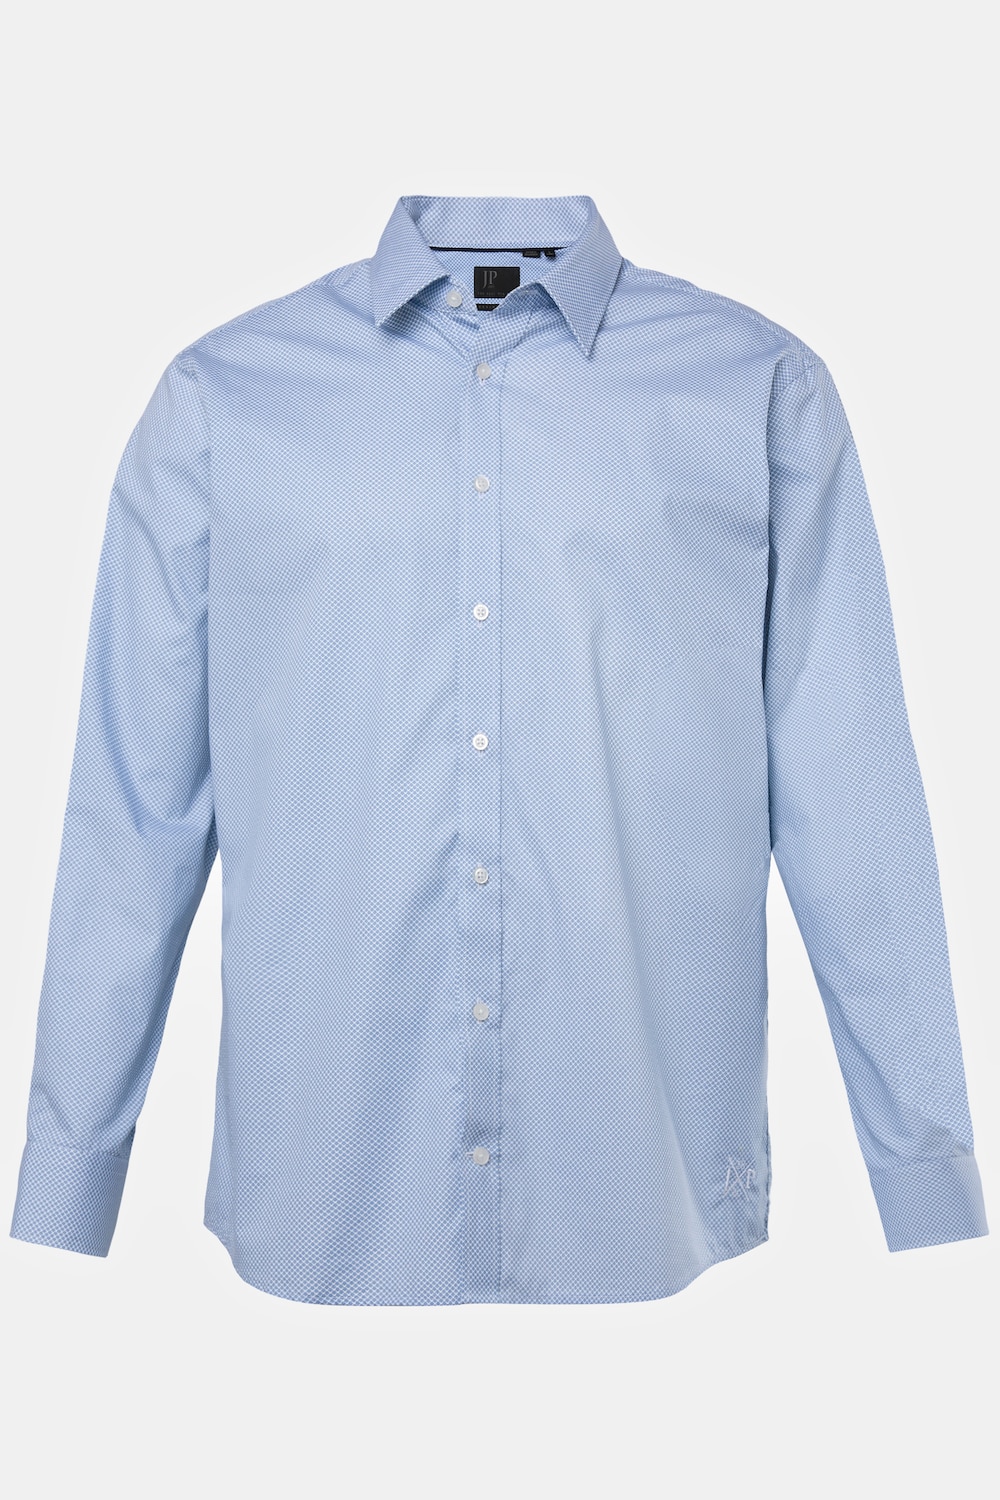 Grote Maten Zakelijk overhemd, Heren, blauw, Maat: 5XL, Katoen, JP1880